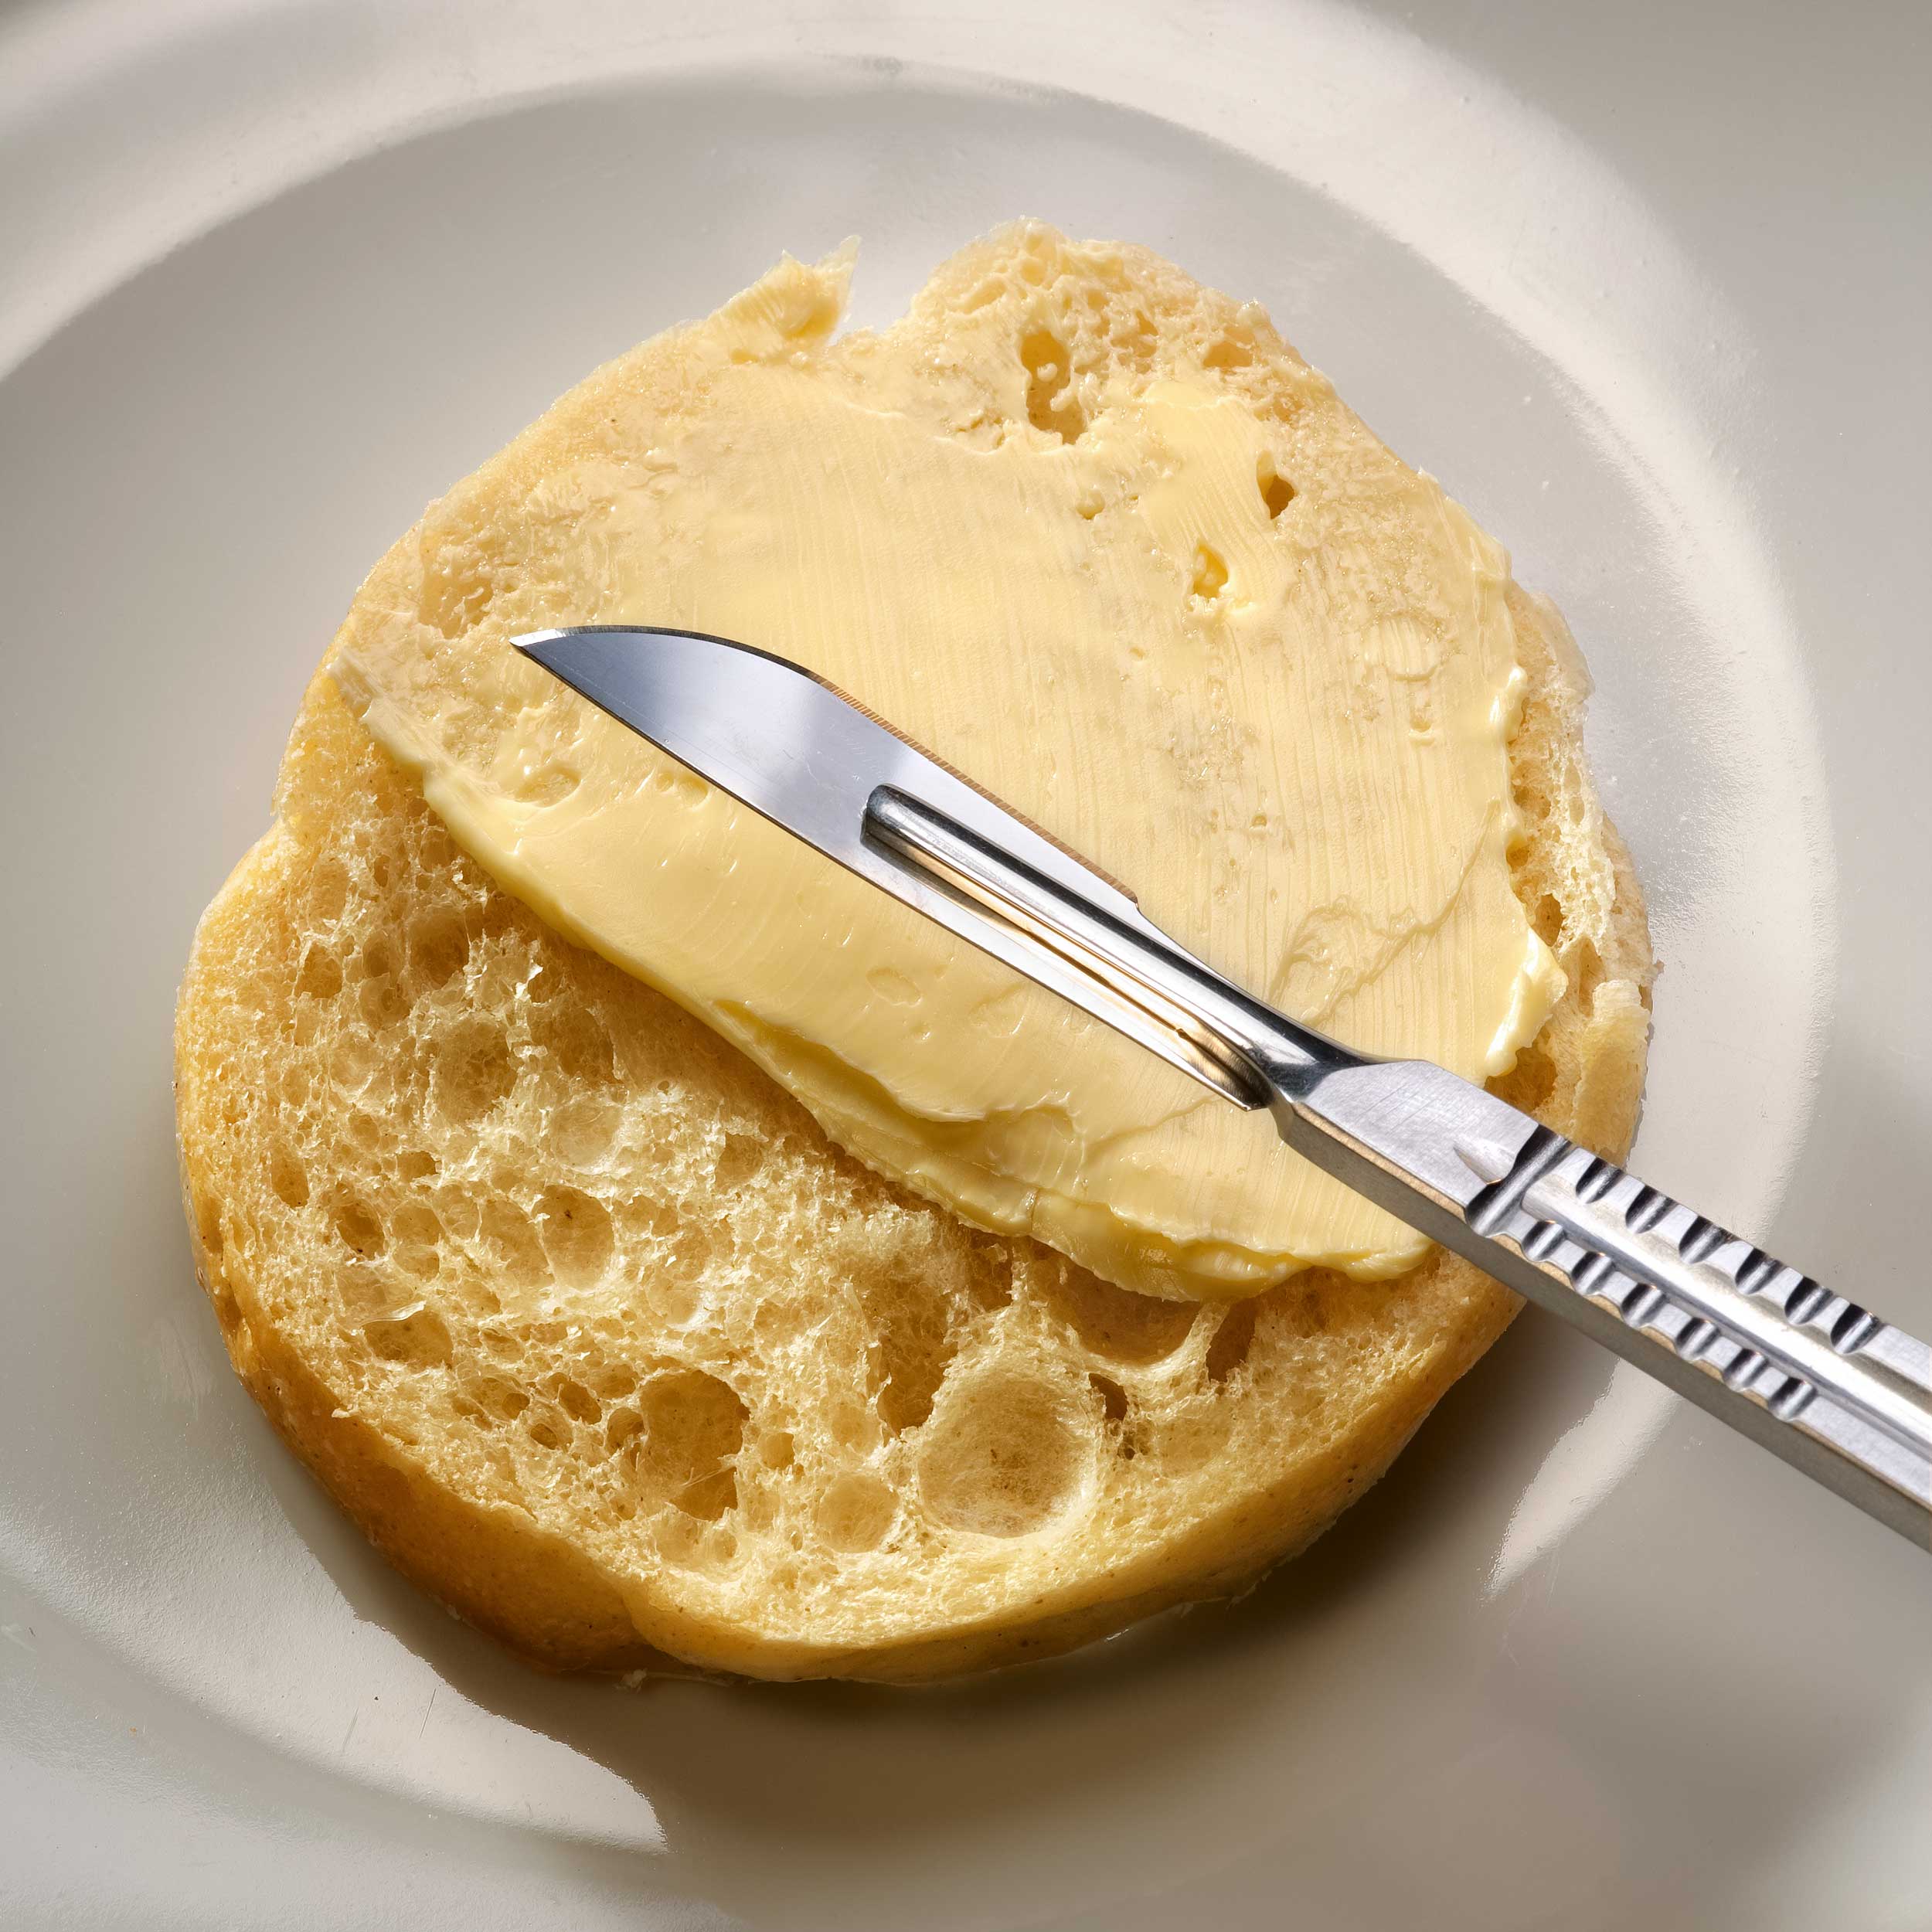 צילום למודעה צילום סכין מנתחים על בייגל עם חמאה